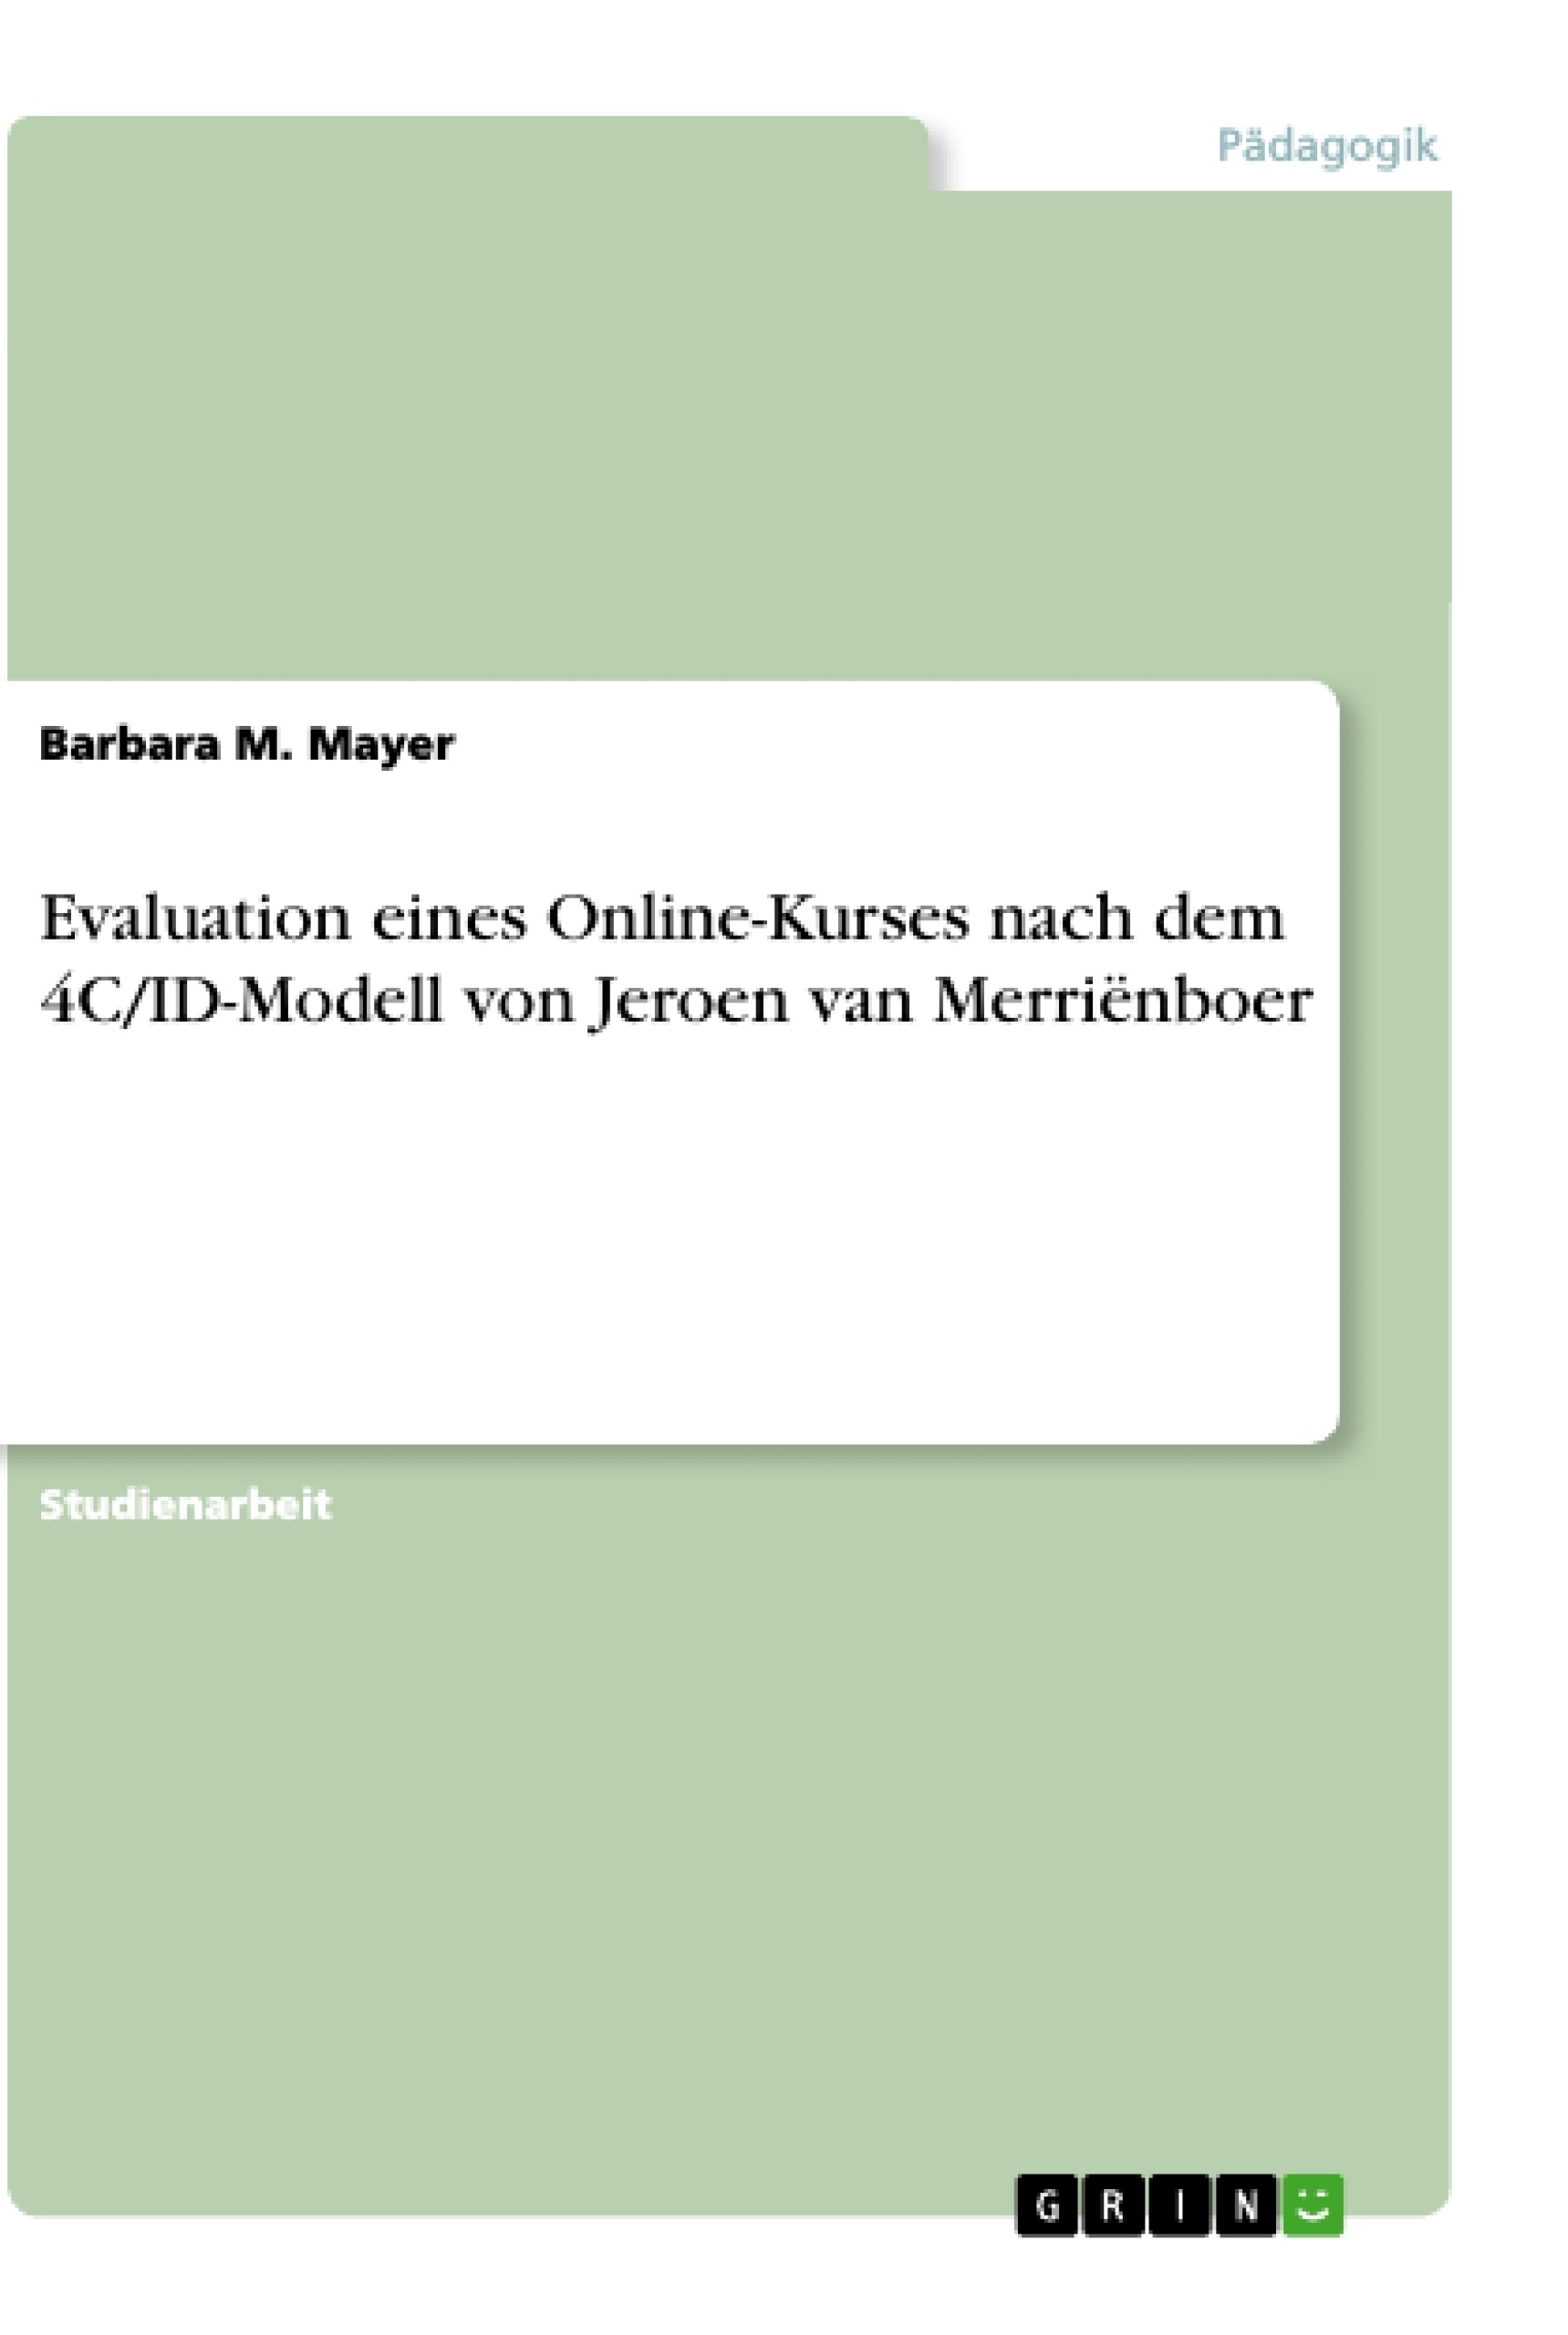 Title: Evaluation eines Online-Kurses nach dem 4C/ID-Modell von Jeroen van Merriënboer